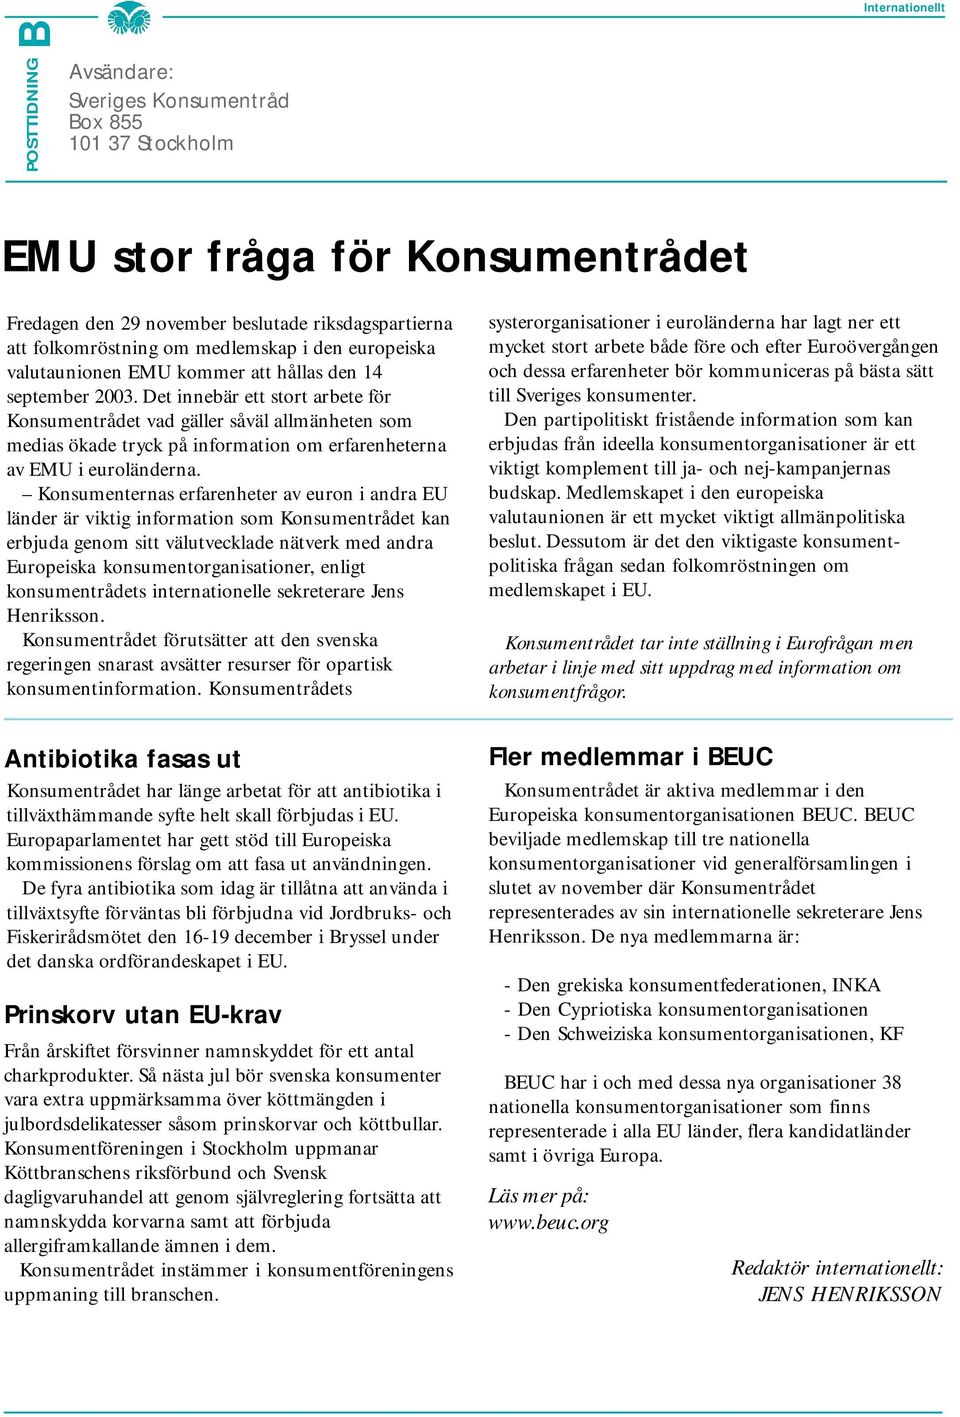 Det innebär ett stort arbete för Konsumentrådet vad gäller såväl allmänheten som medias ökade tryck på information om erfarenheterna av EMU i euroländerna.